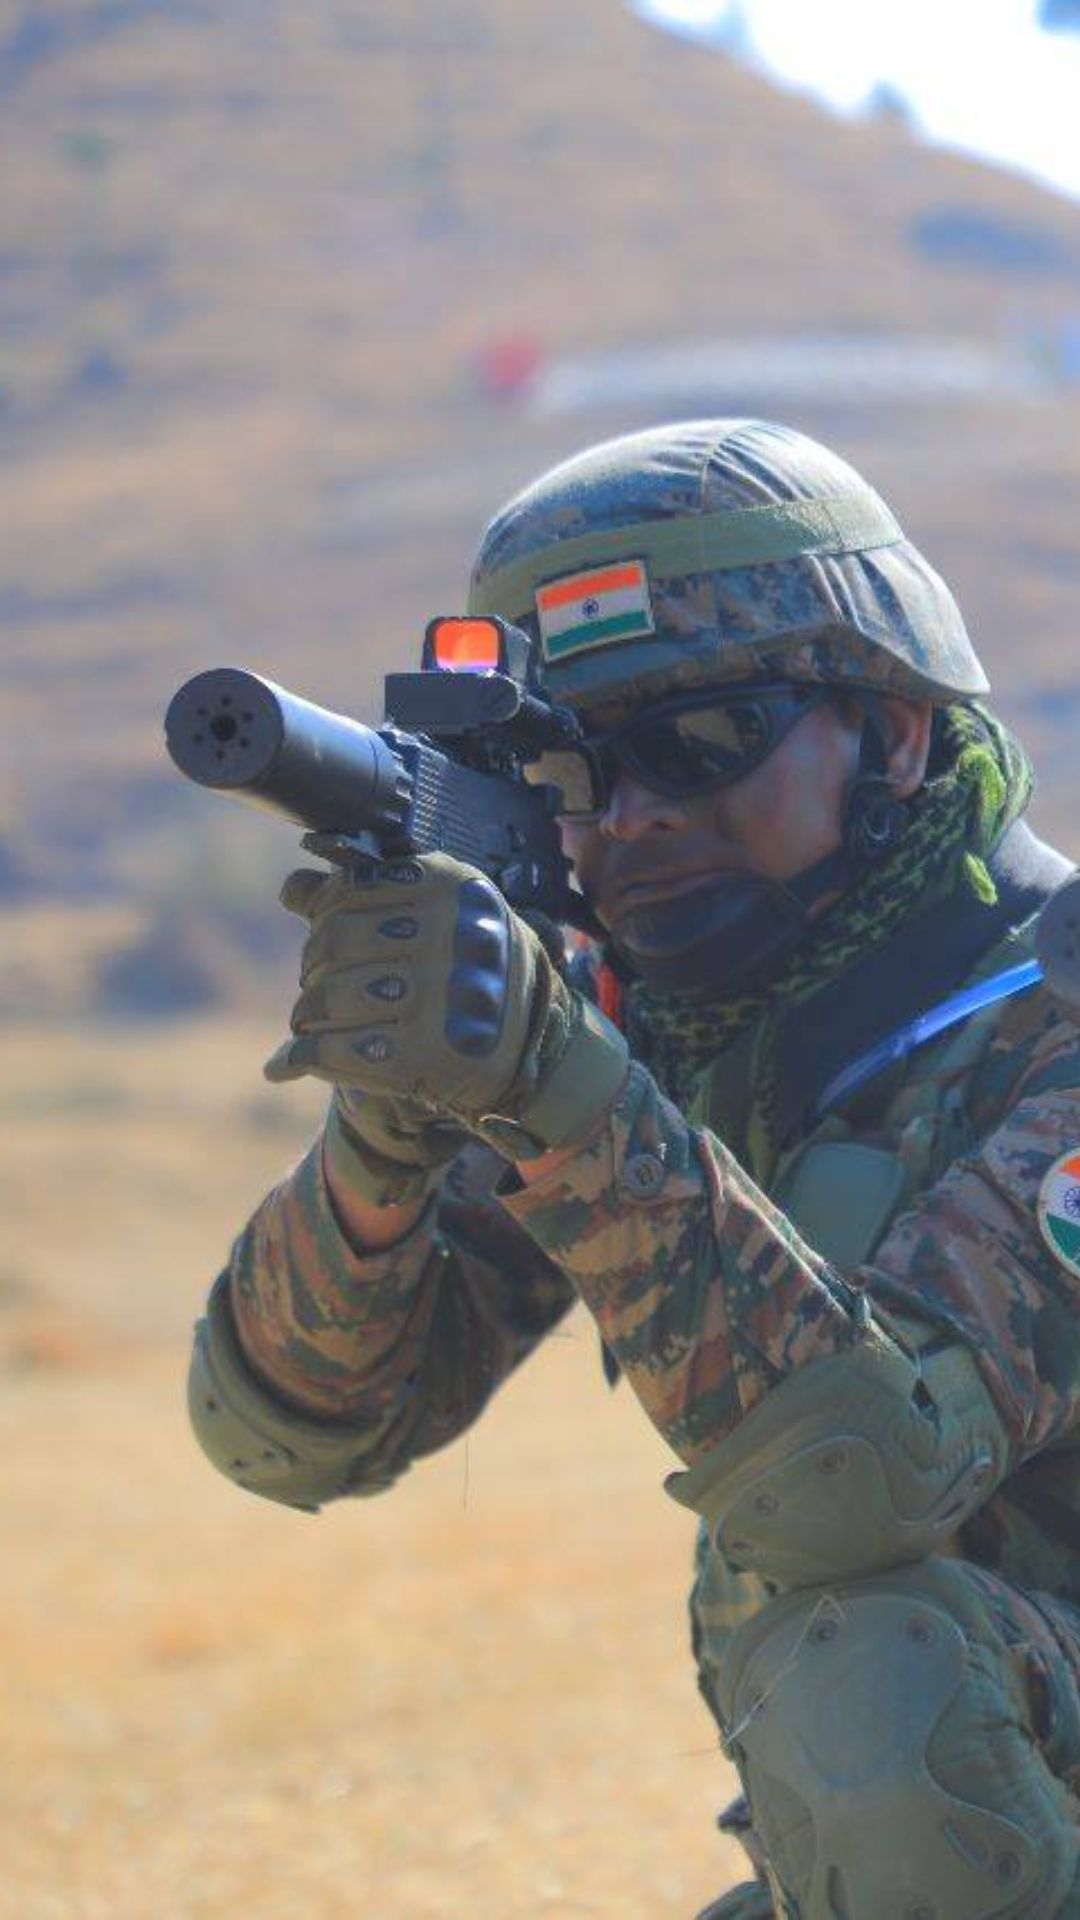 उत्तराखंड के पिथौरागढ़ में भारत और उज्बेकिस्तान के सैनिक कर रहे थे युद्धाभ्यास 